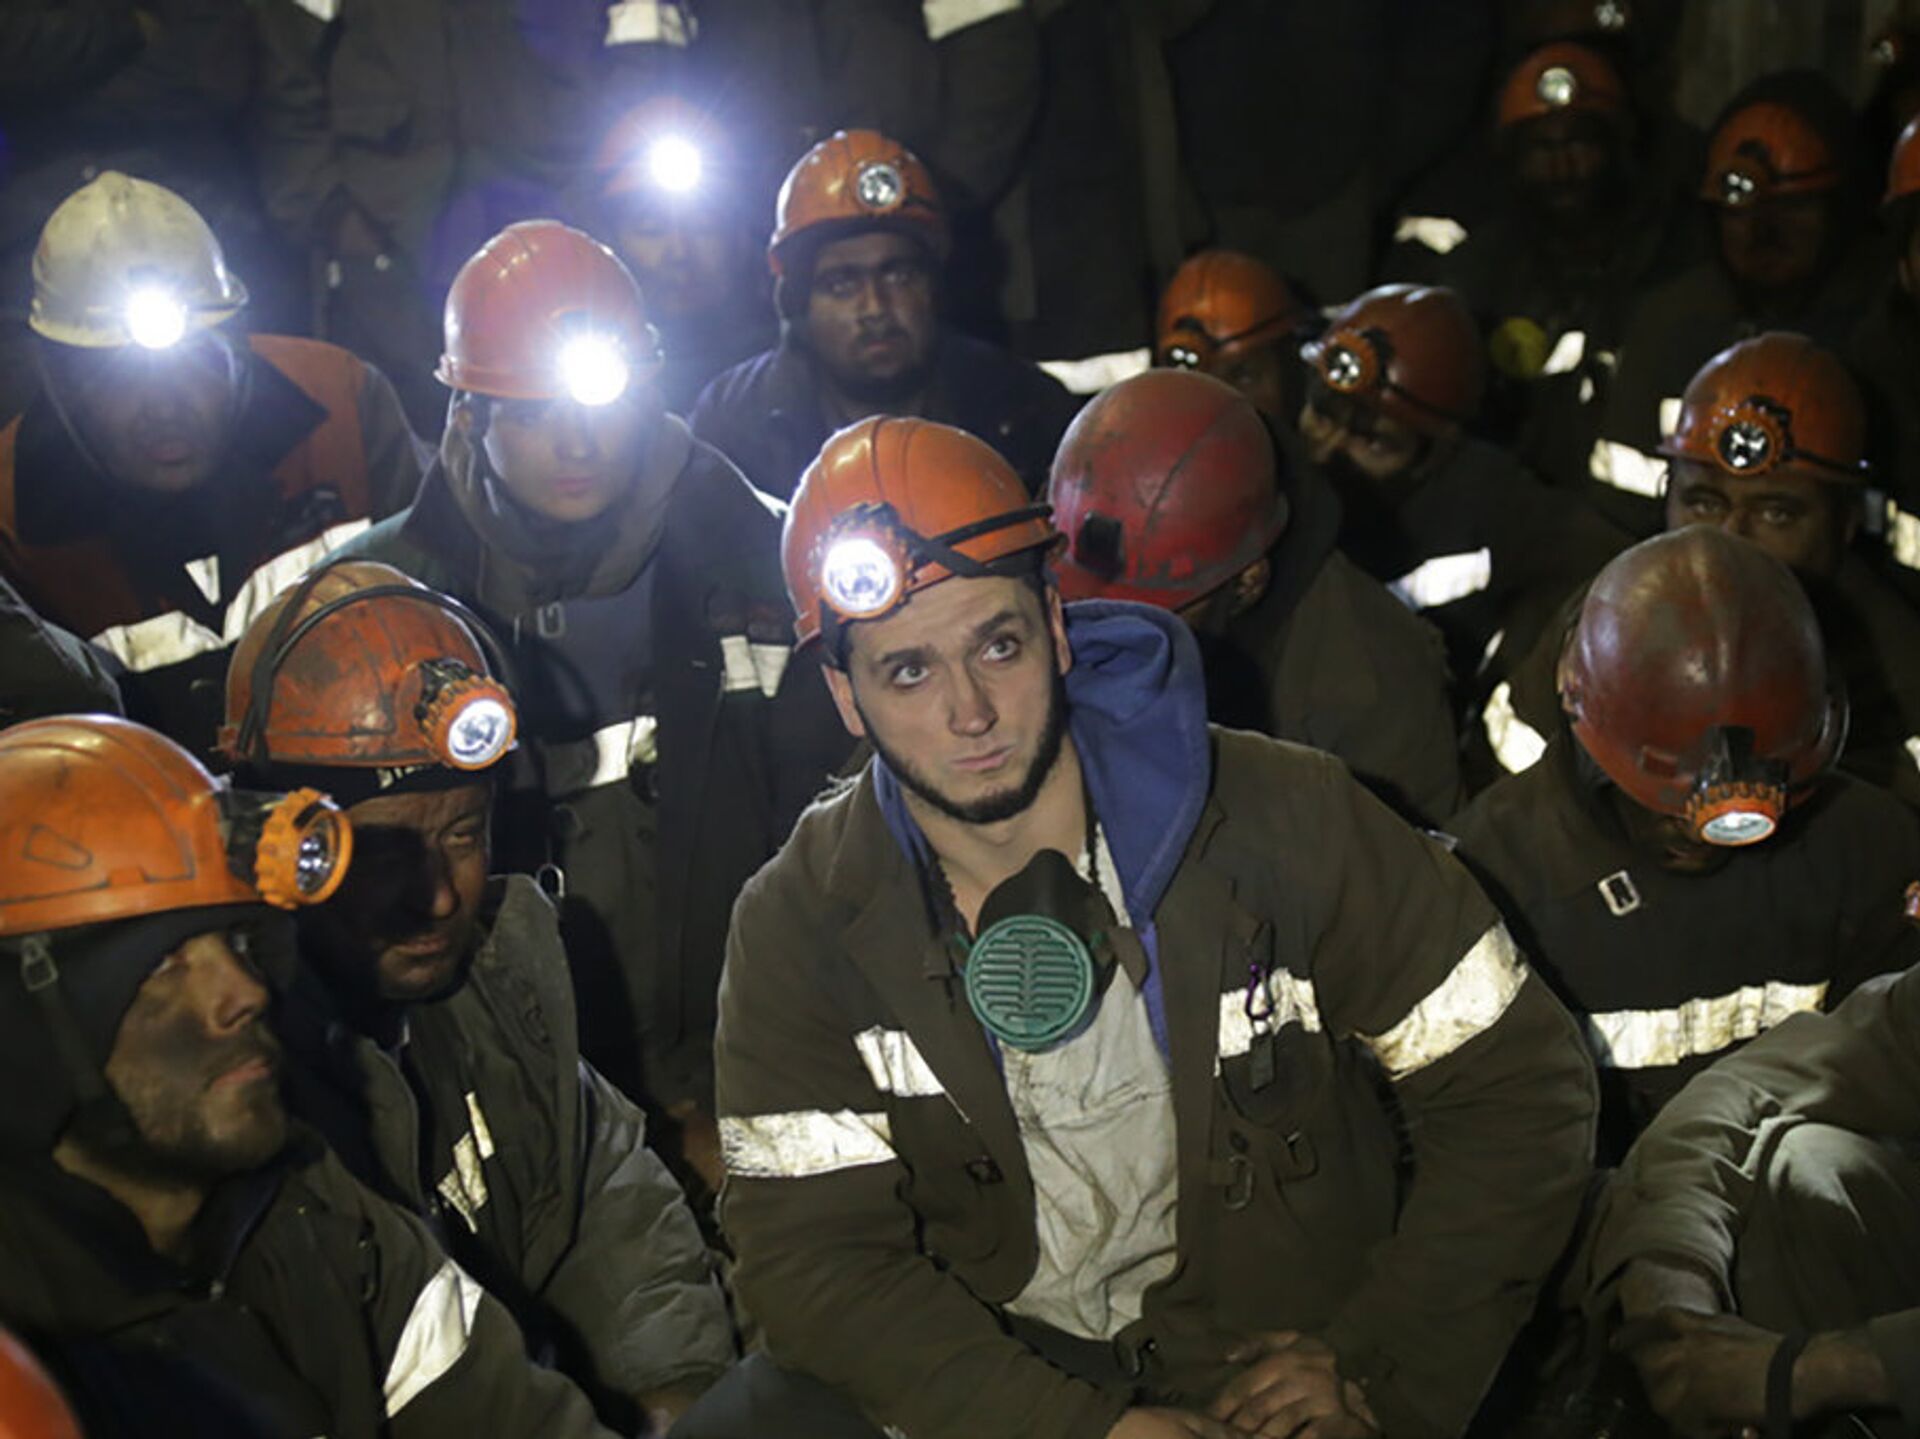 Что стало с шахтерами в амурской области